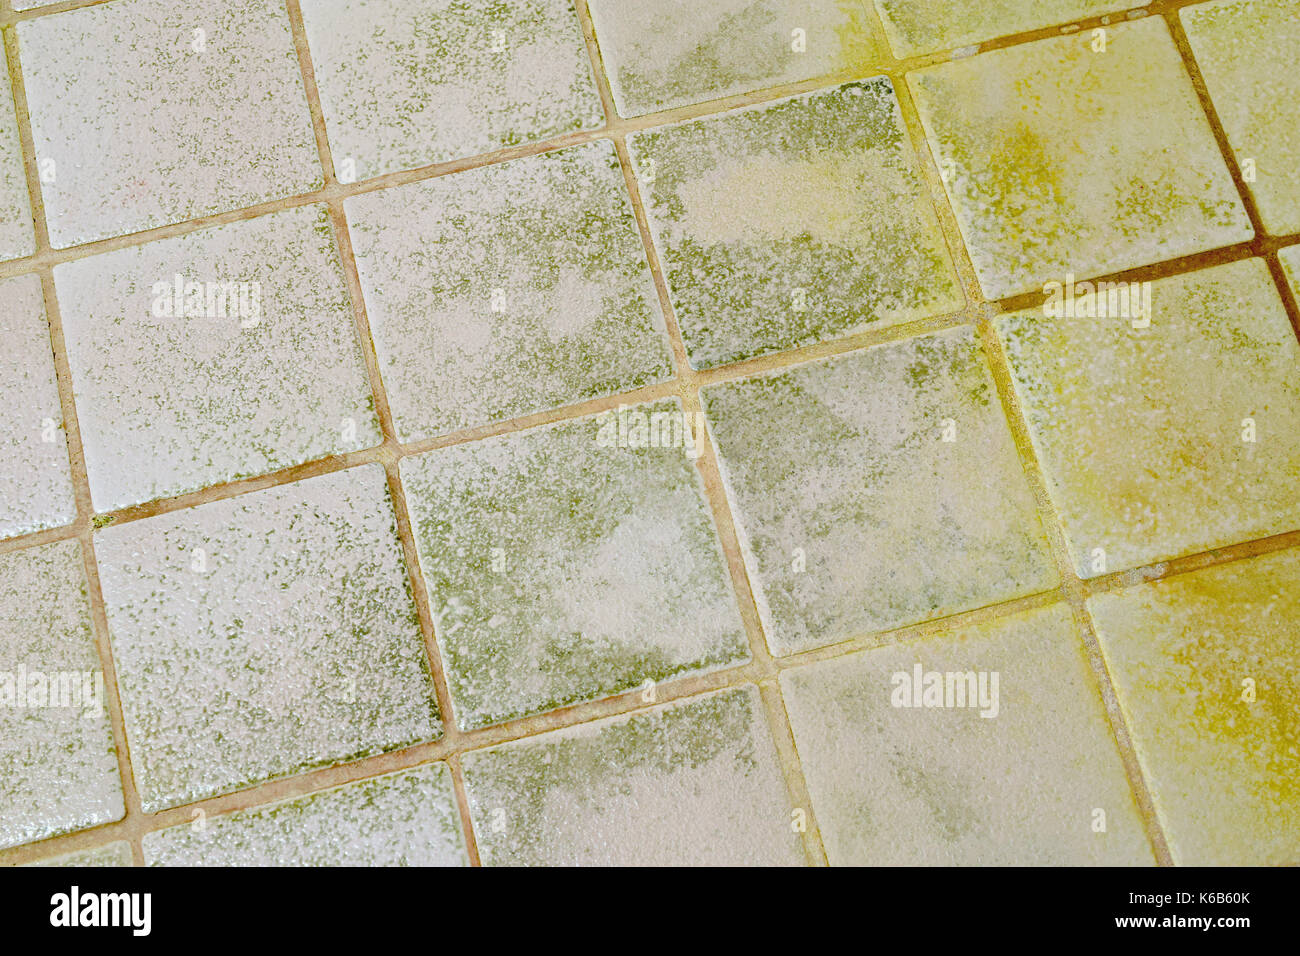 Mold On The Bathroom Tile Floor Stock Photo 158827443 Alamy